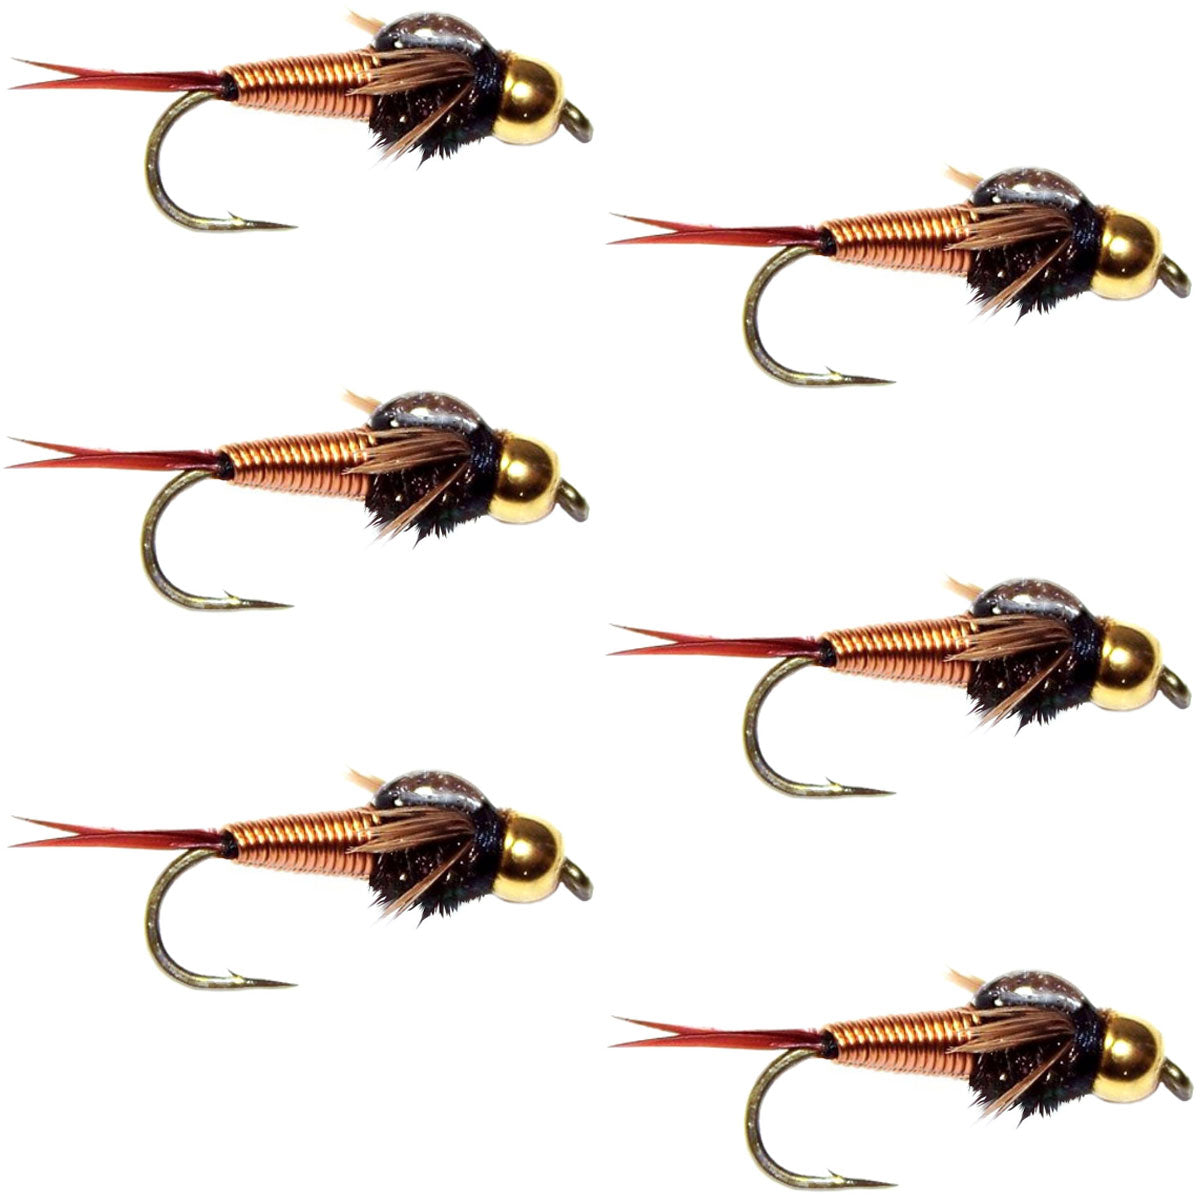 Bead Head Copper John Nymph Fly Fishing Flies - Set of 6 Flies Hook Size 14